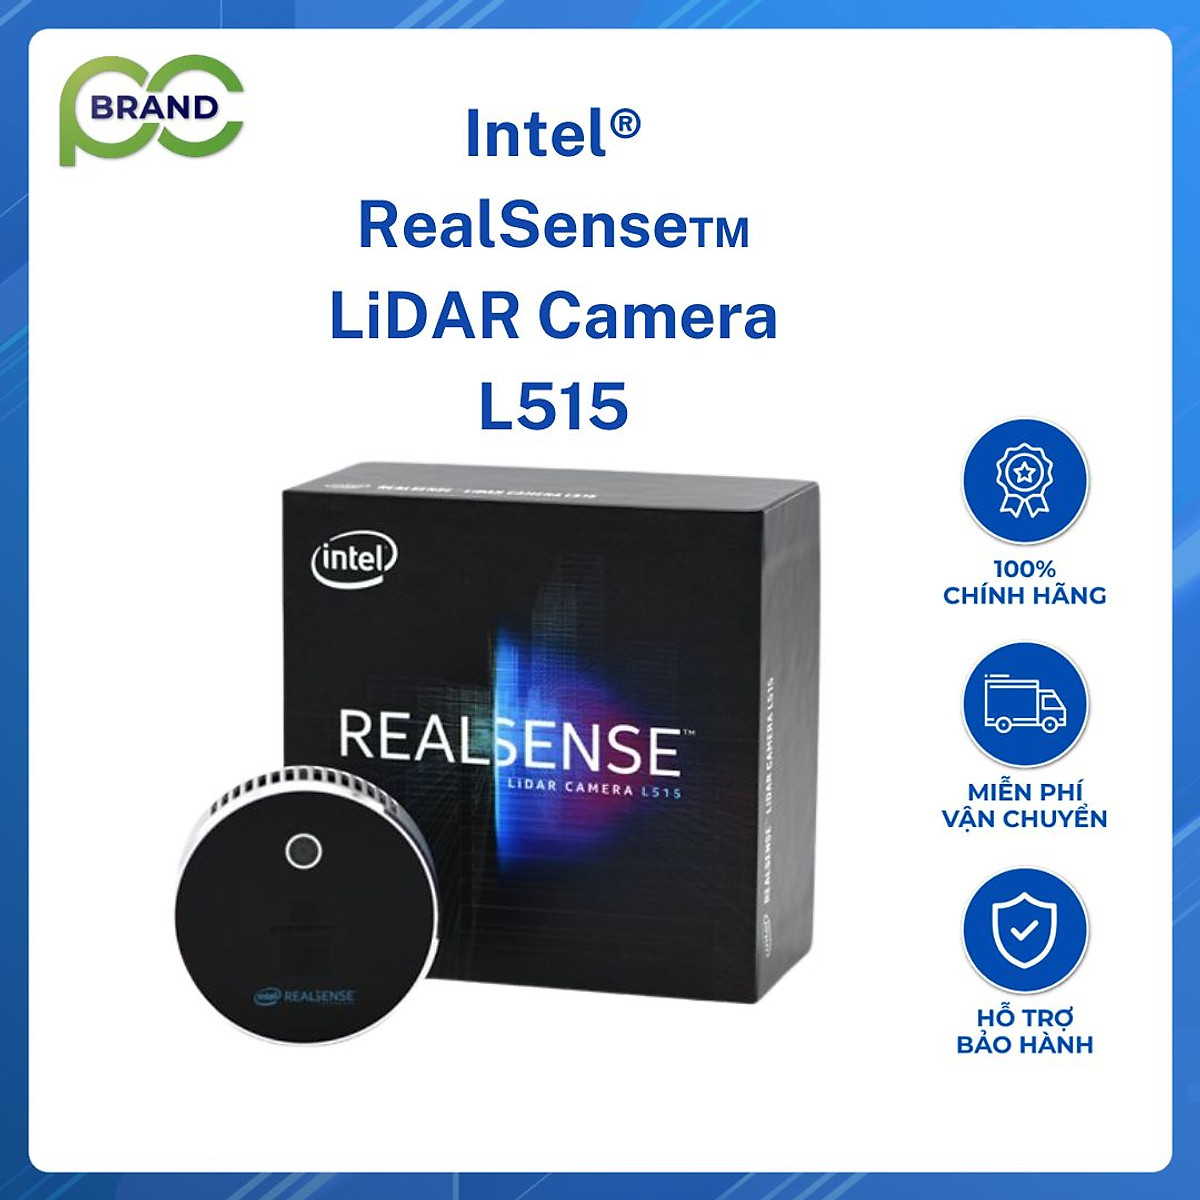 Mua Intel RealSense LiDAR Camera L515 Hàng Chính Hãng tại BrandPC Tiki